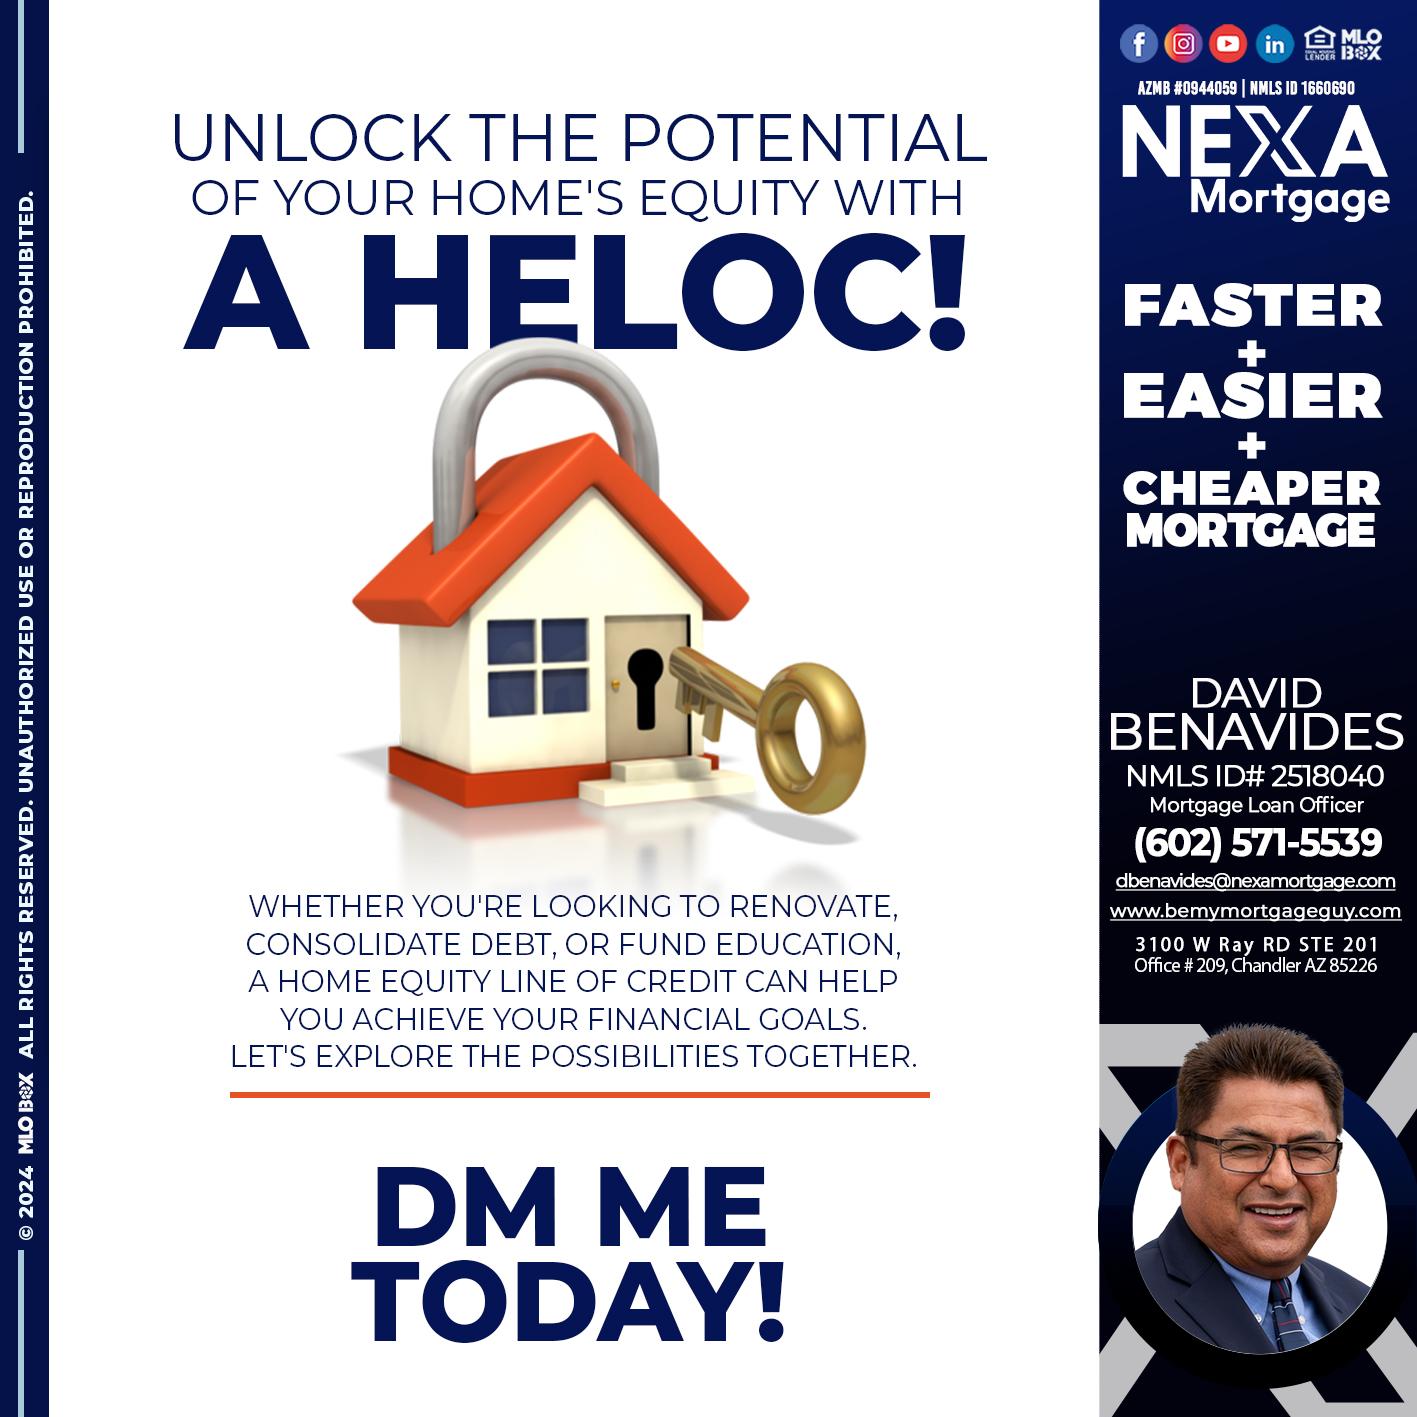 HELOC - David Benavides -Mortgage Loan Officer